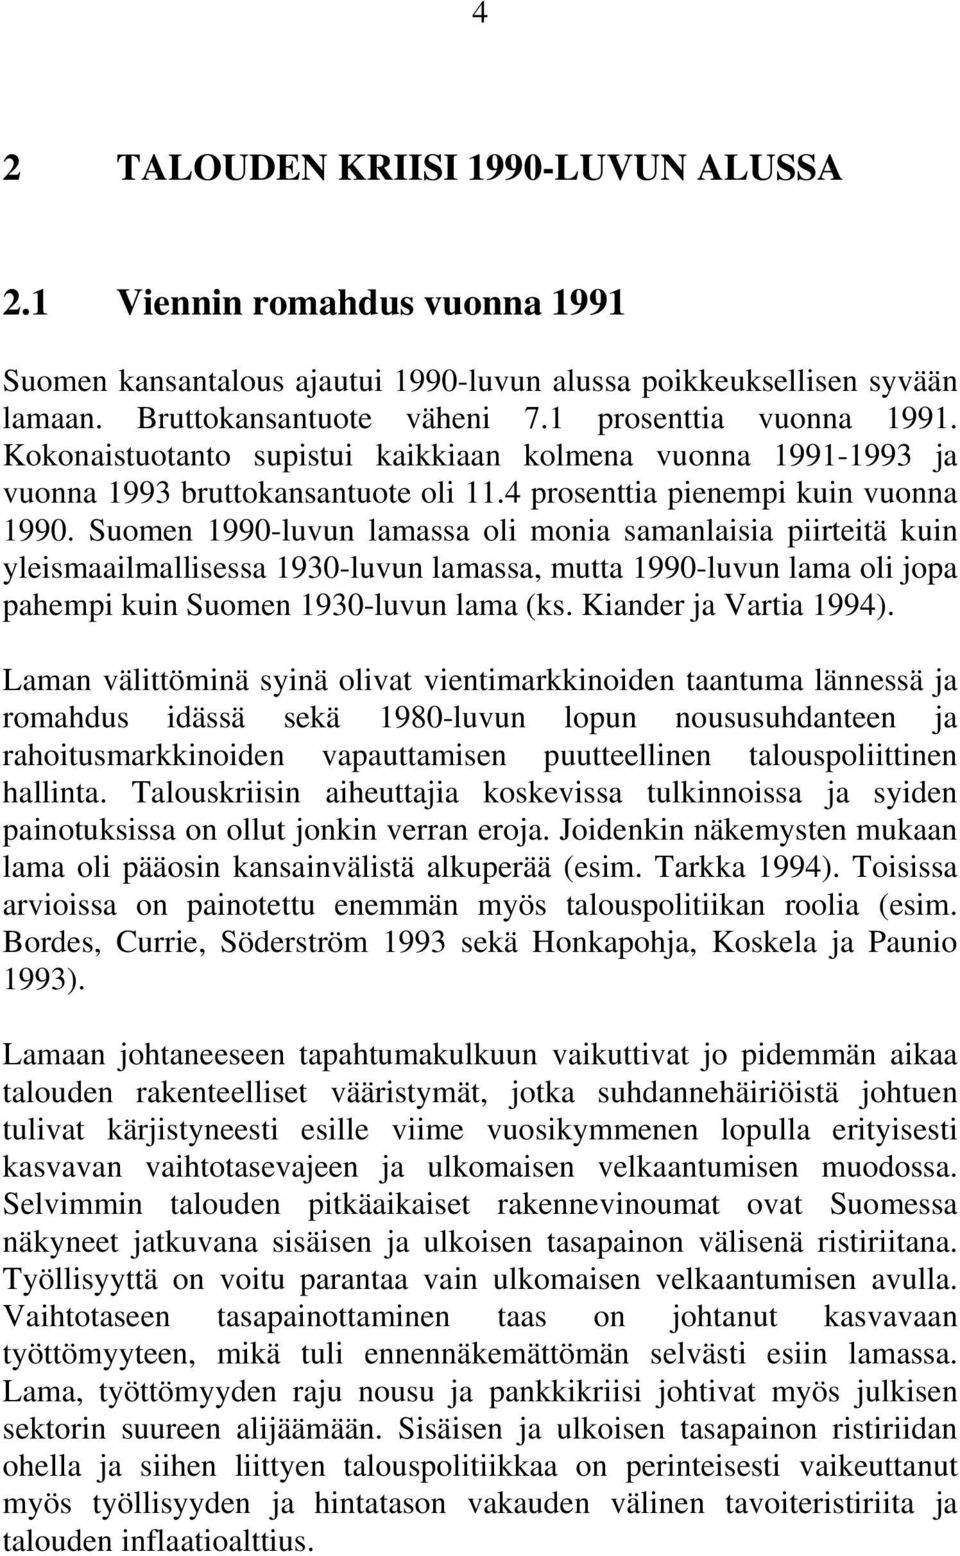 Suomen 1990-luvun lamassa oli monia samanlaisia piirteitä kuin yleismaailmallisessa 1930-luvun lamassa, mutta 1990-luvun lama oli jopa pahempi kuin Suomen 1930-luvun lama (ks. Kiander ja Vartia 1994).